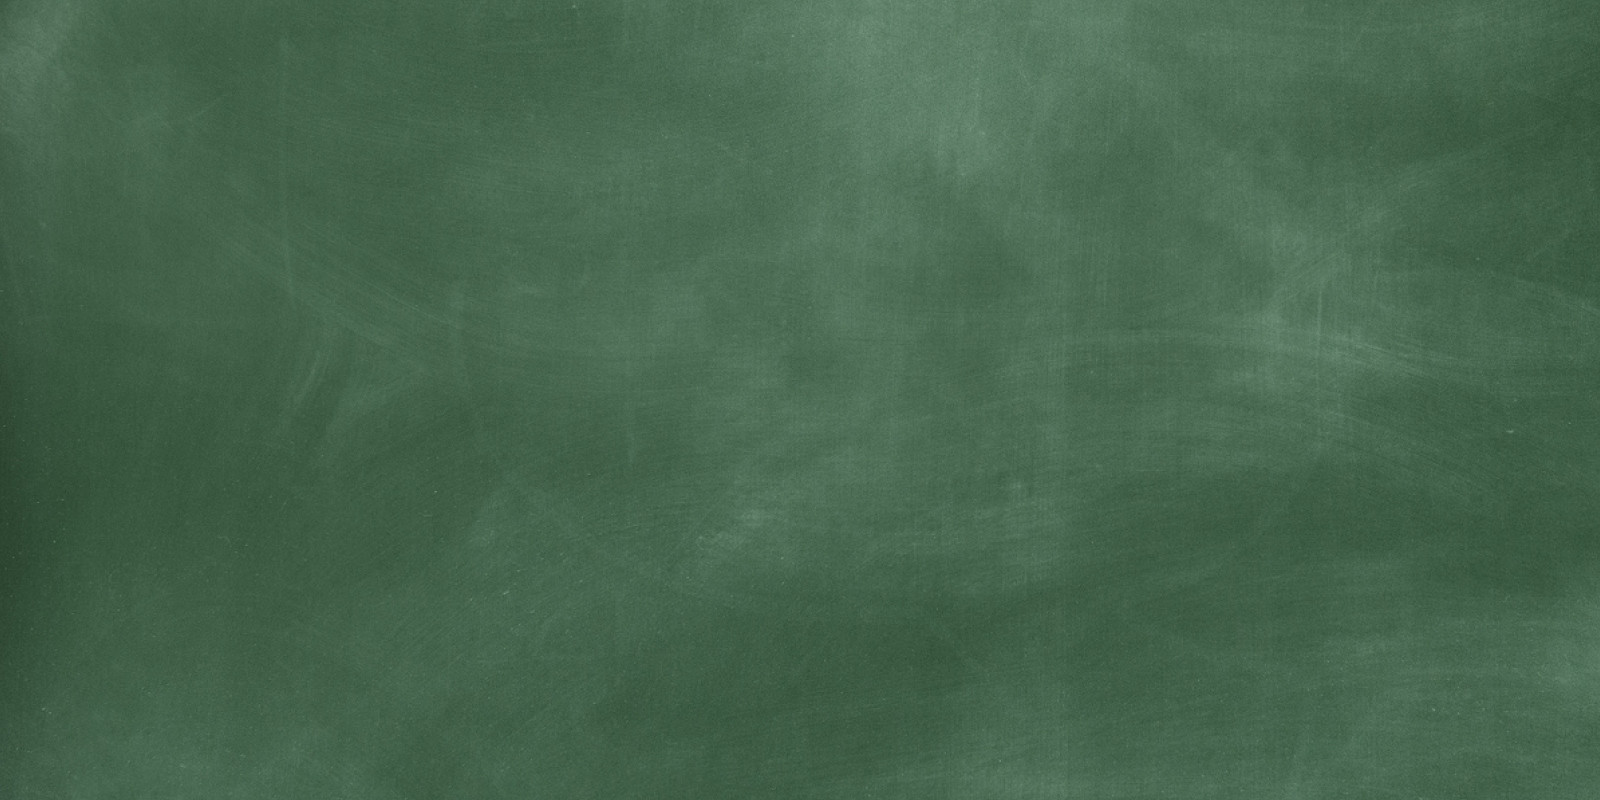 Lakers Schools Chalkboard Background